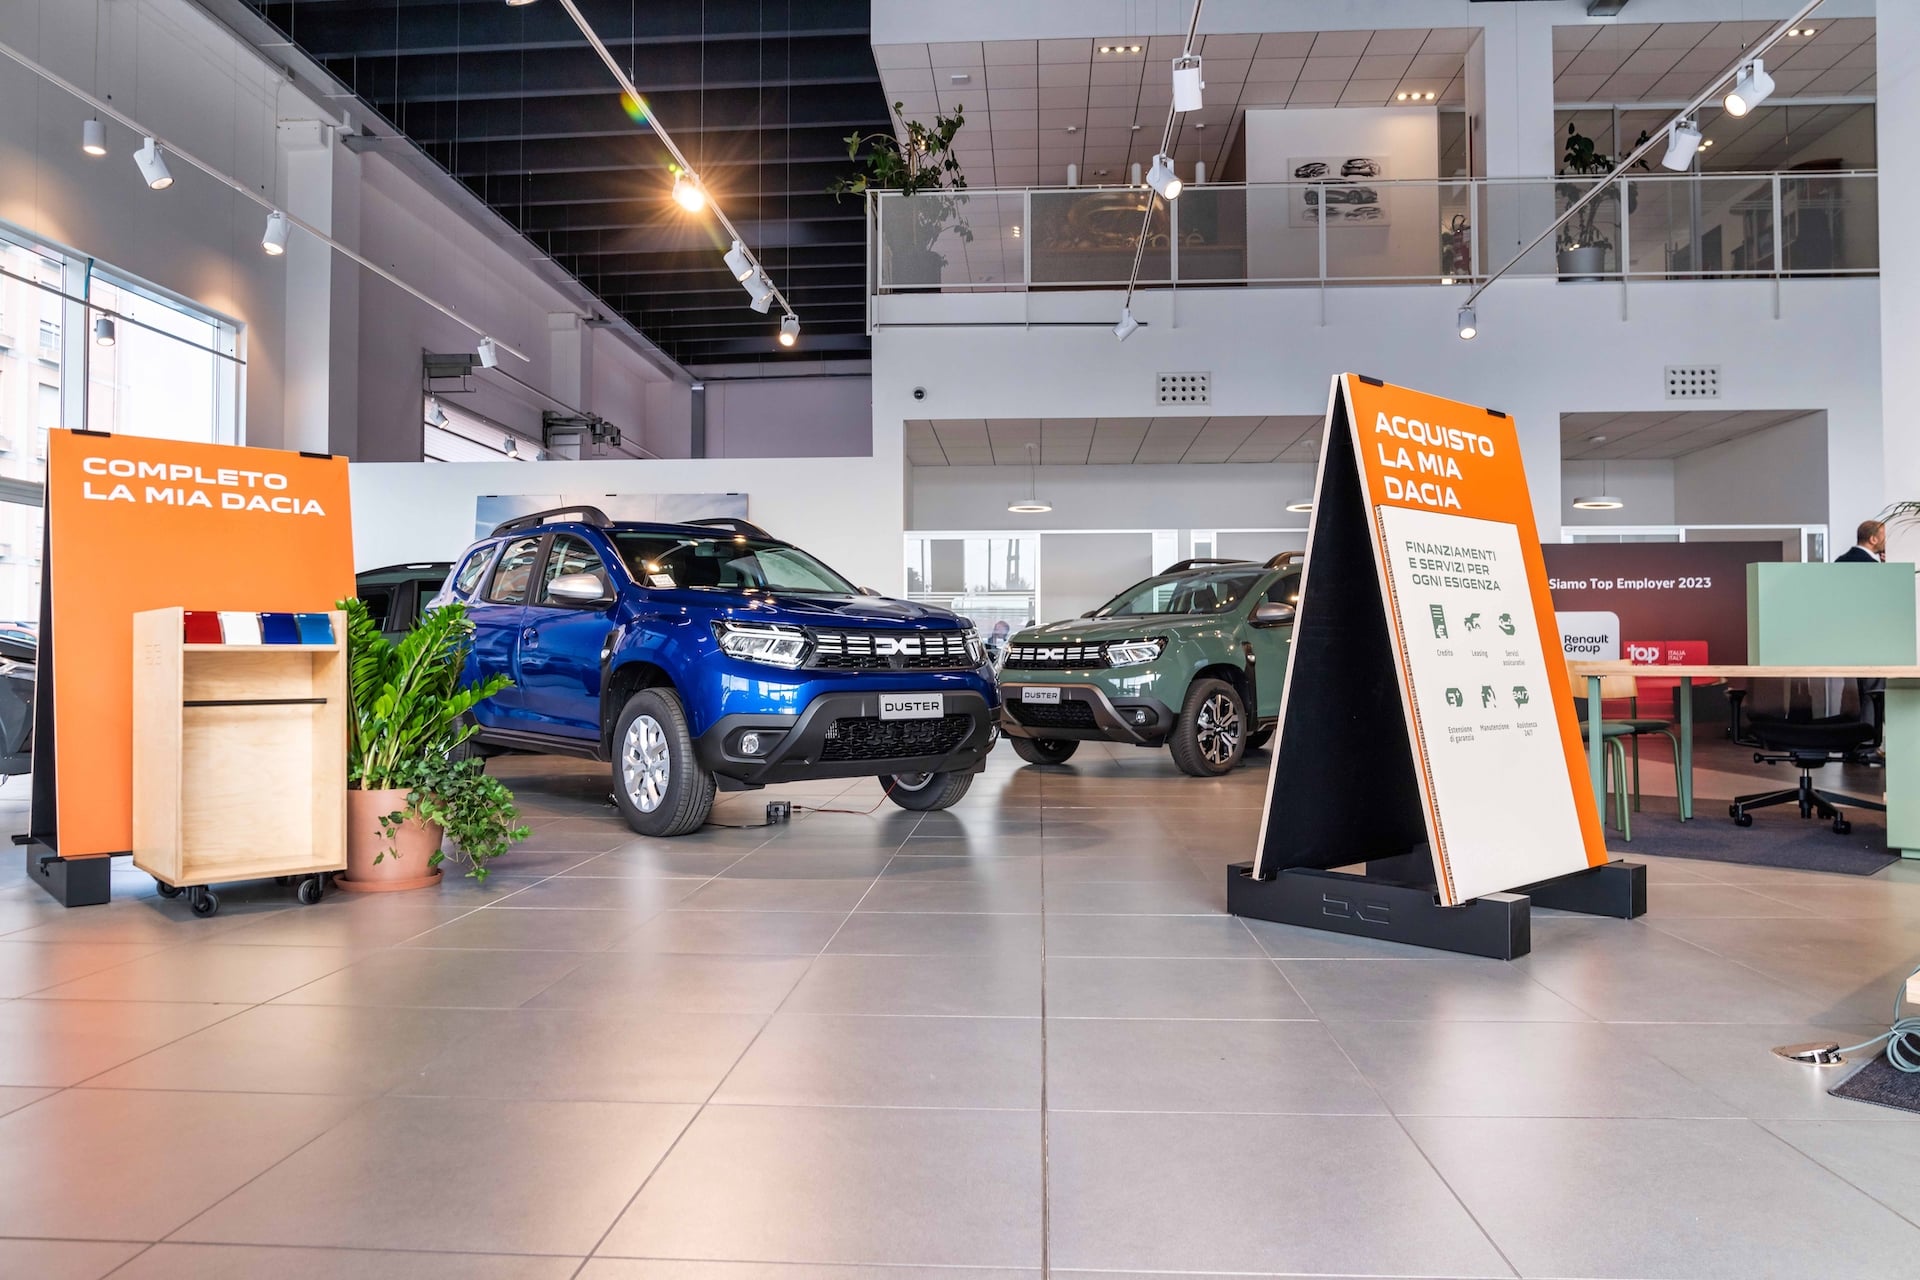 Offerta Dacia All-In: come funziona, prezzi, conviene